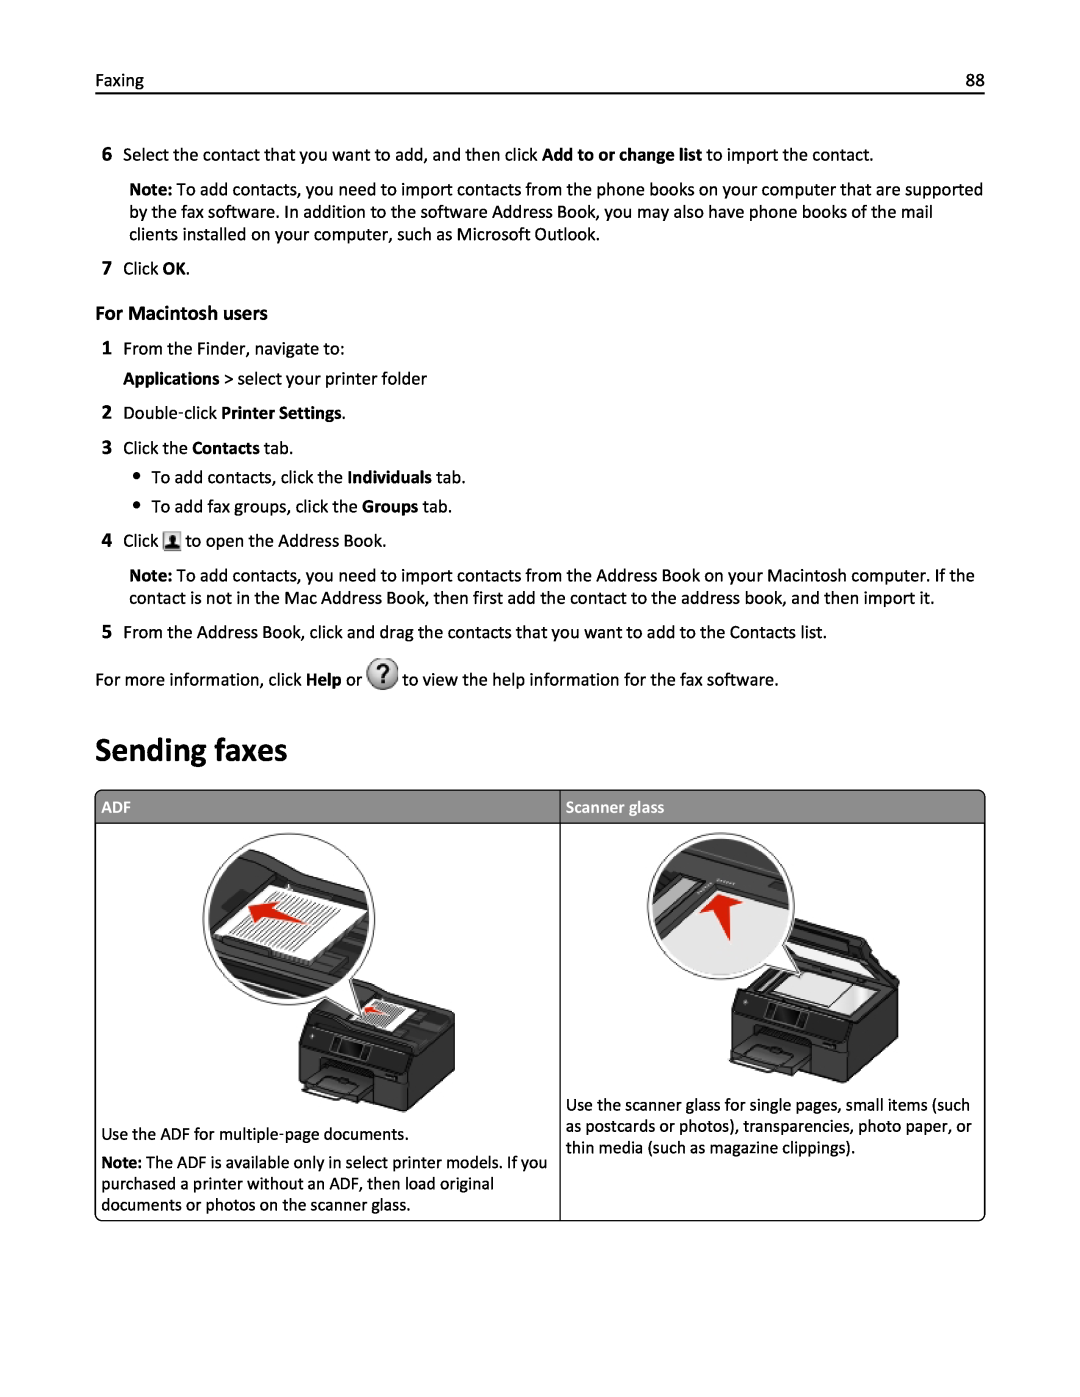 Lexmark 20E, 200 manual Sending faxes, 2Double‑click Printer Settings 